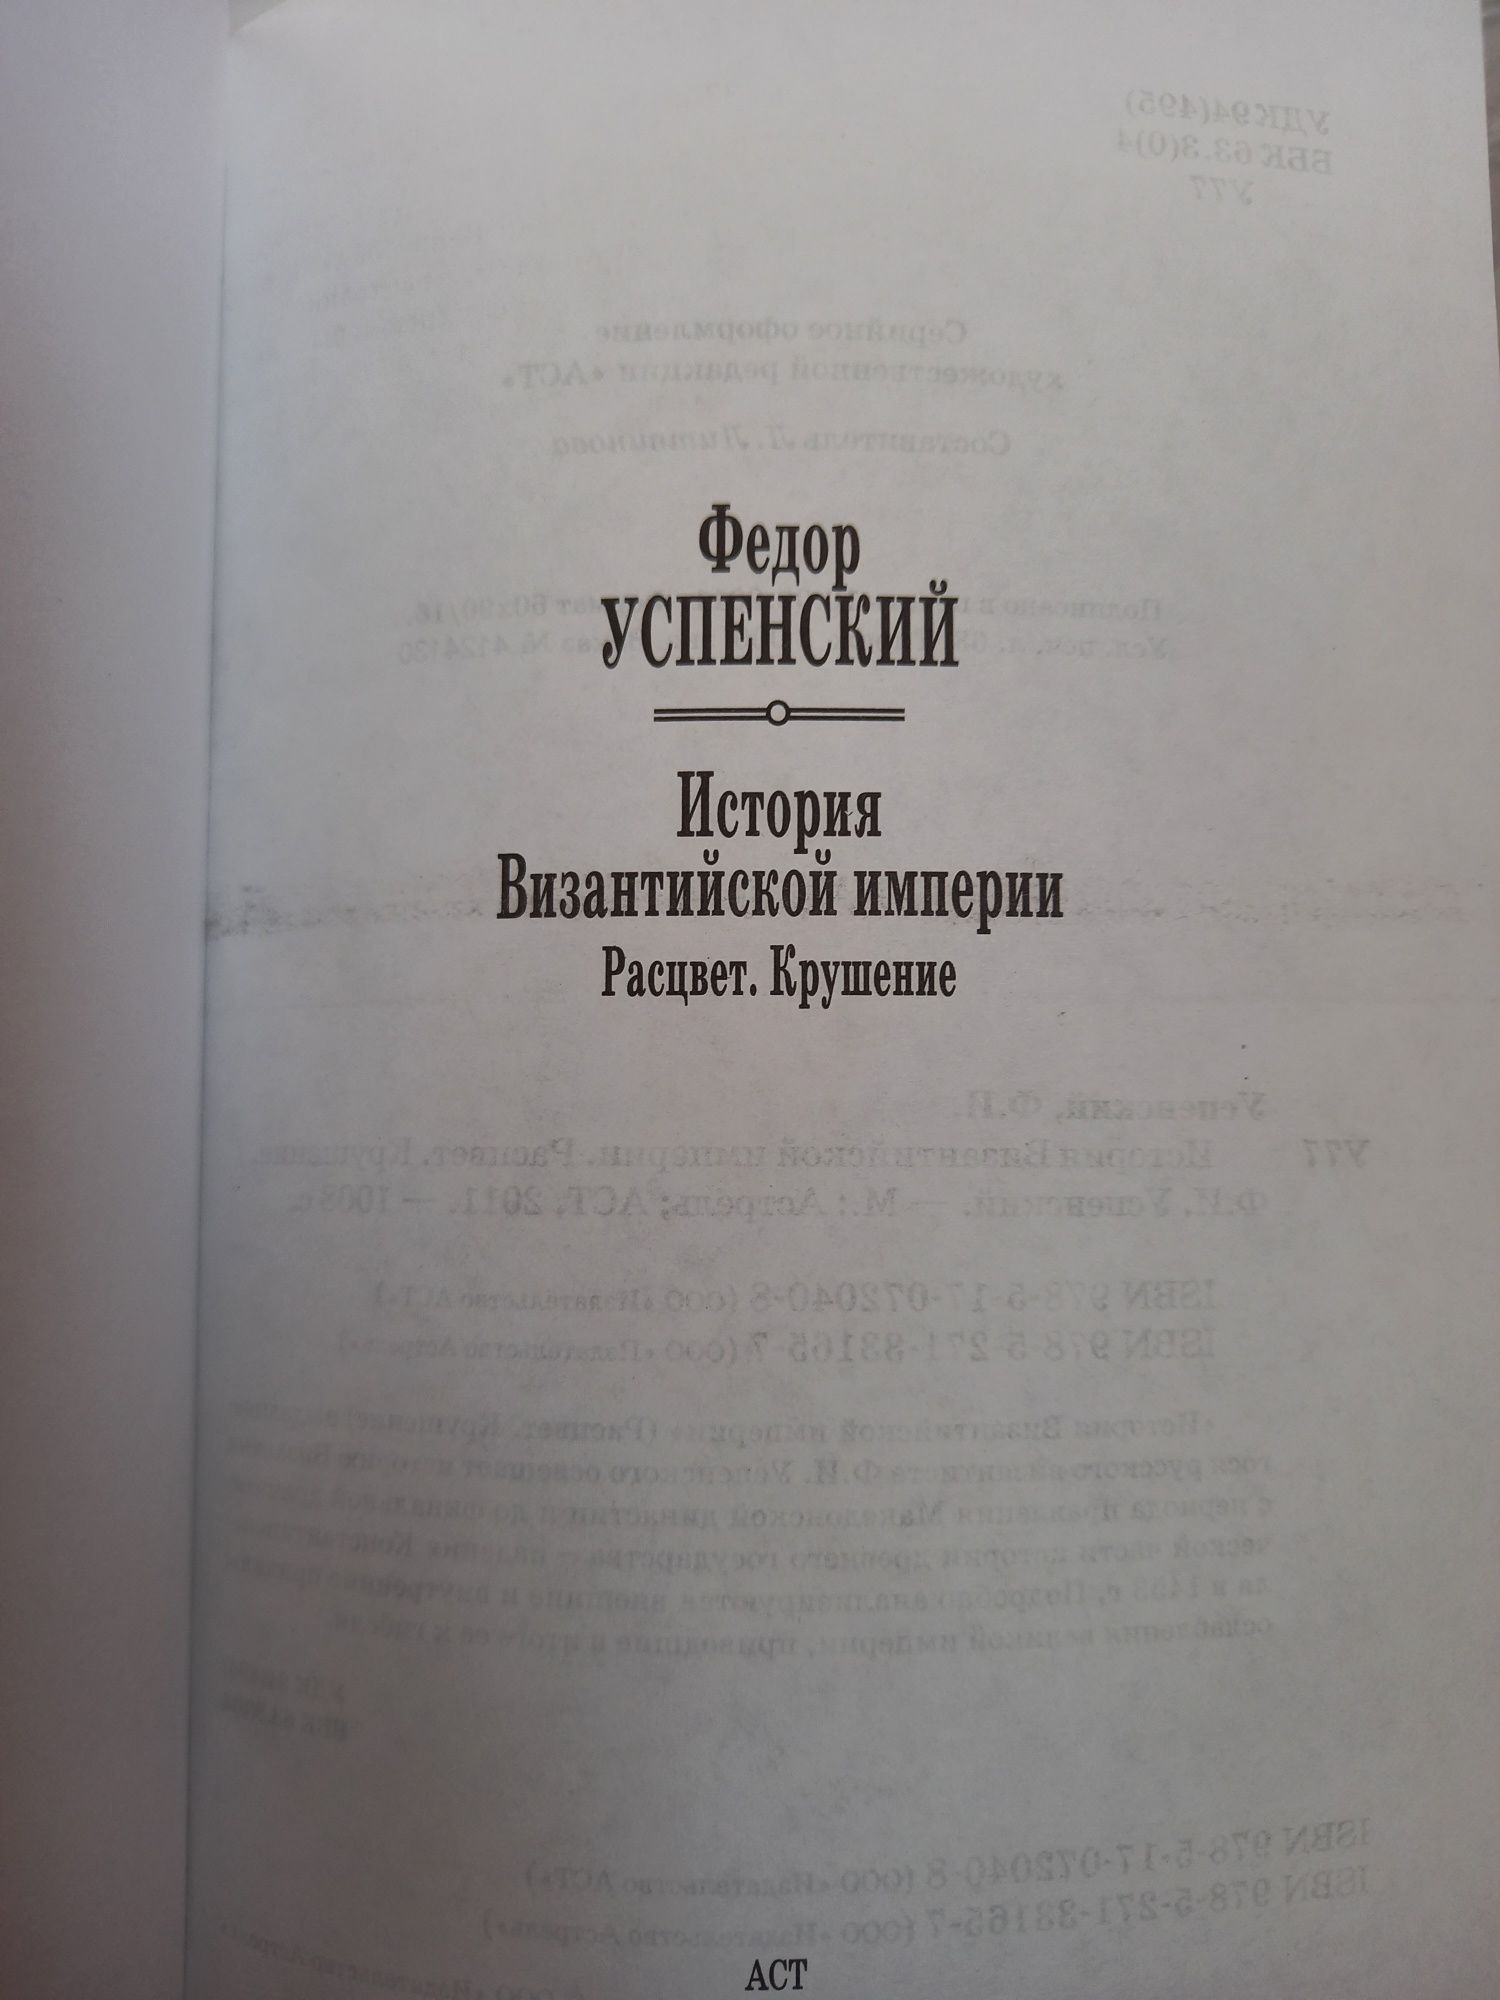 Ф. Успенский. История Византийской империи.